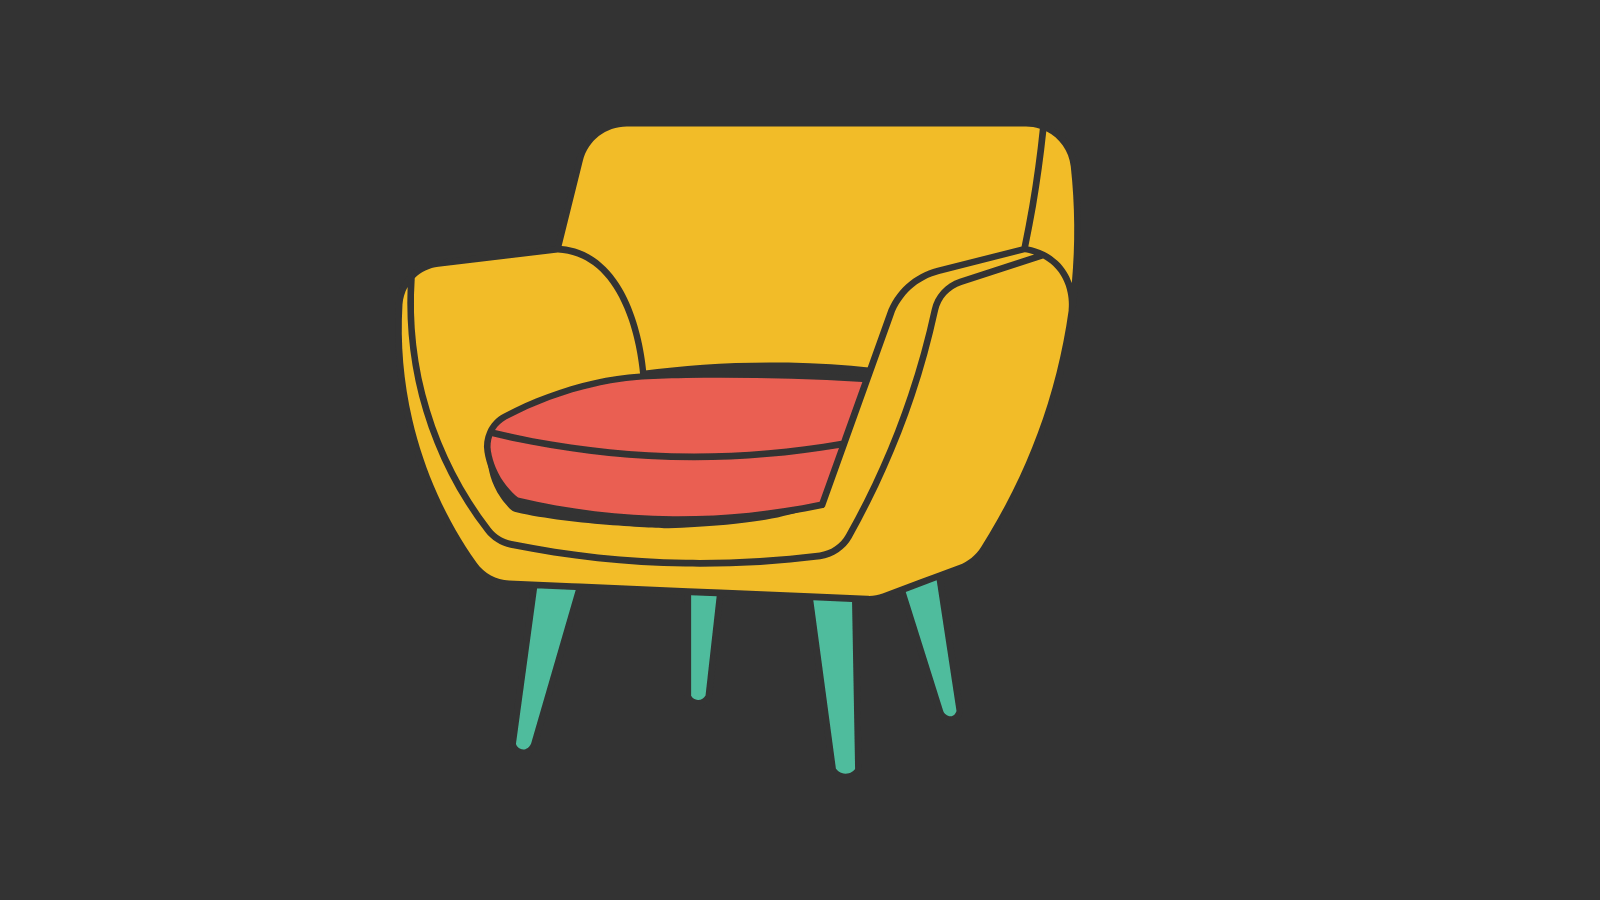 A yellow modern arm chair